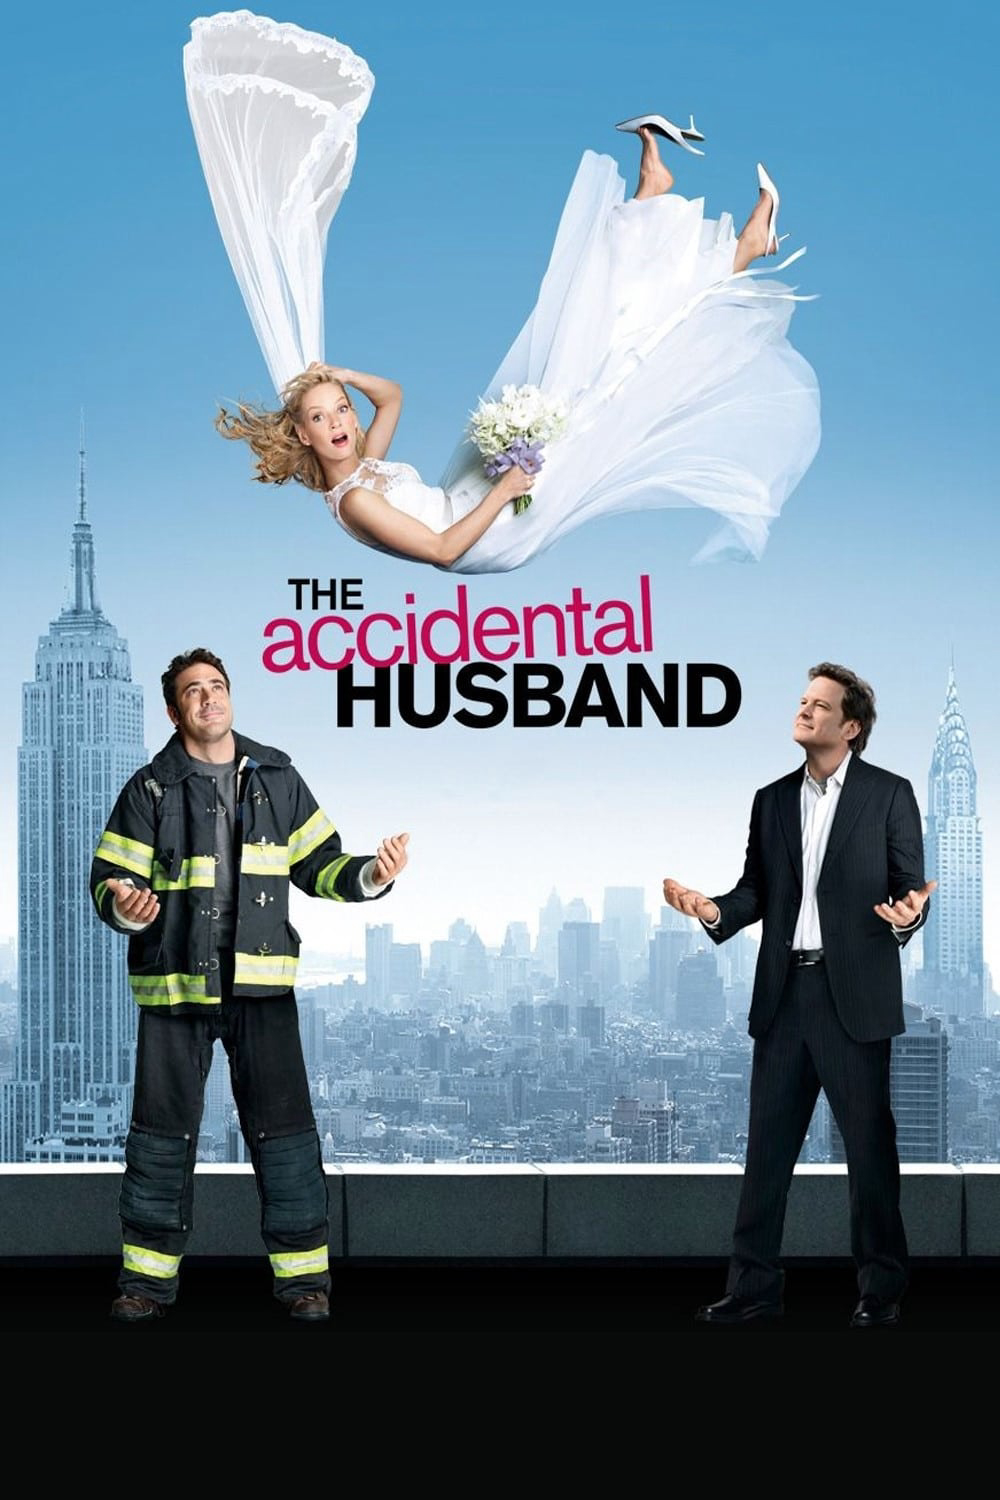 The Accidental Husband (The Accidental Husband) [2008]